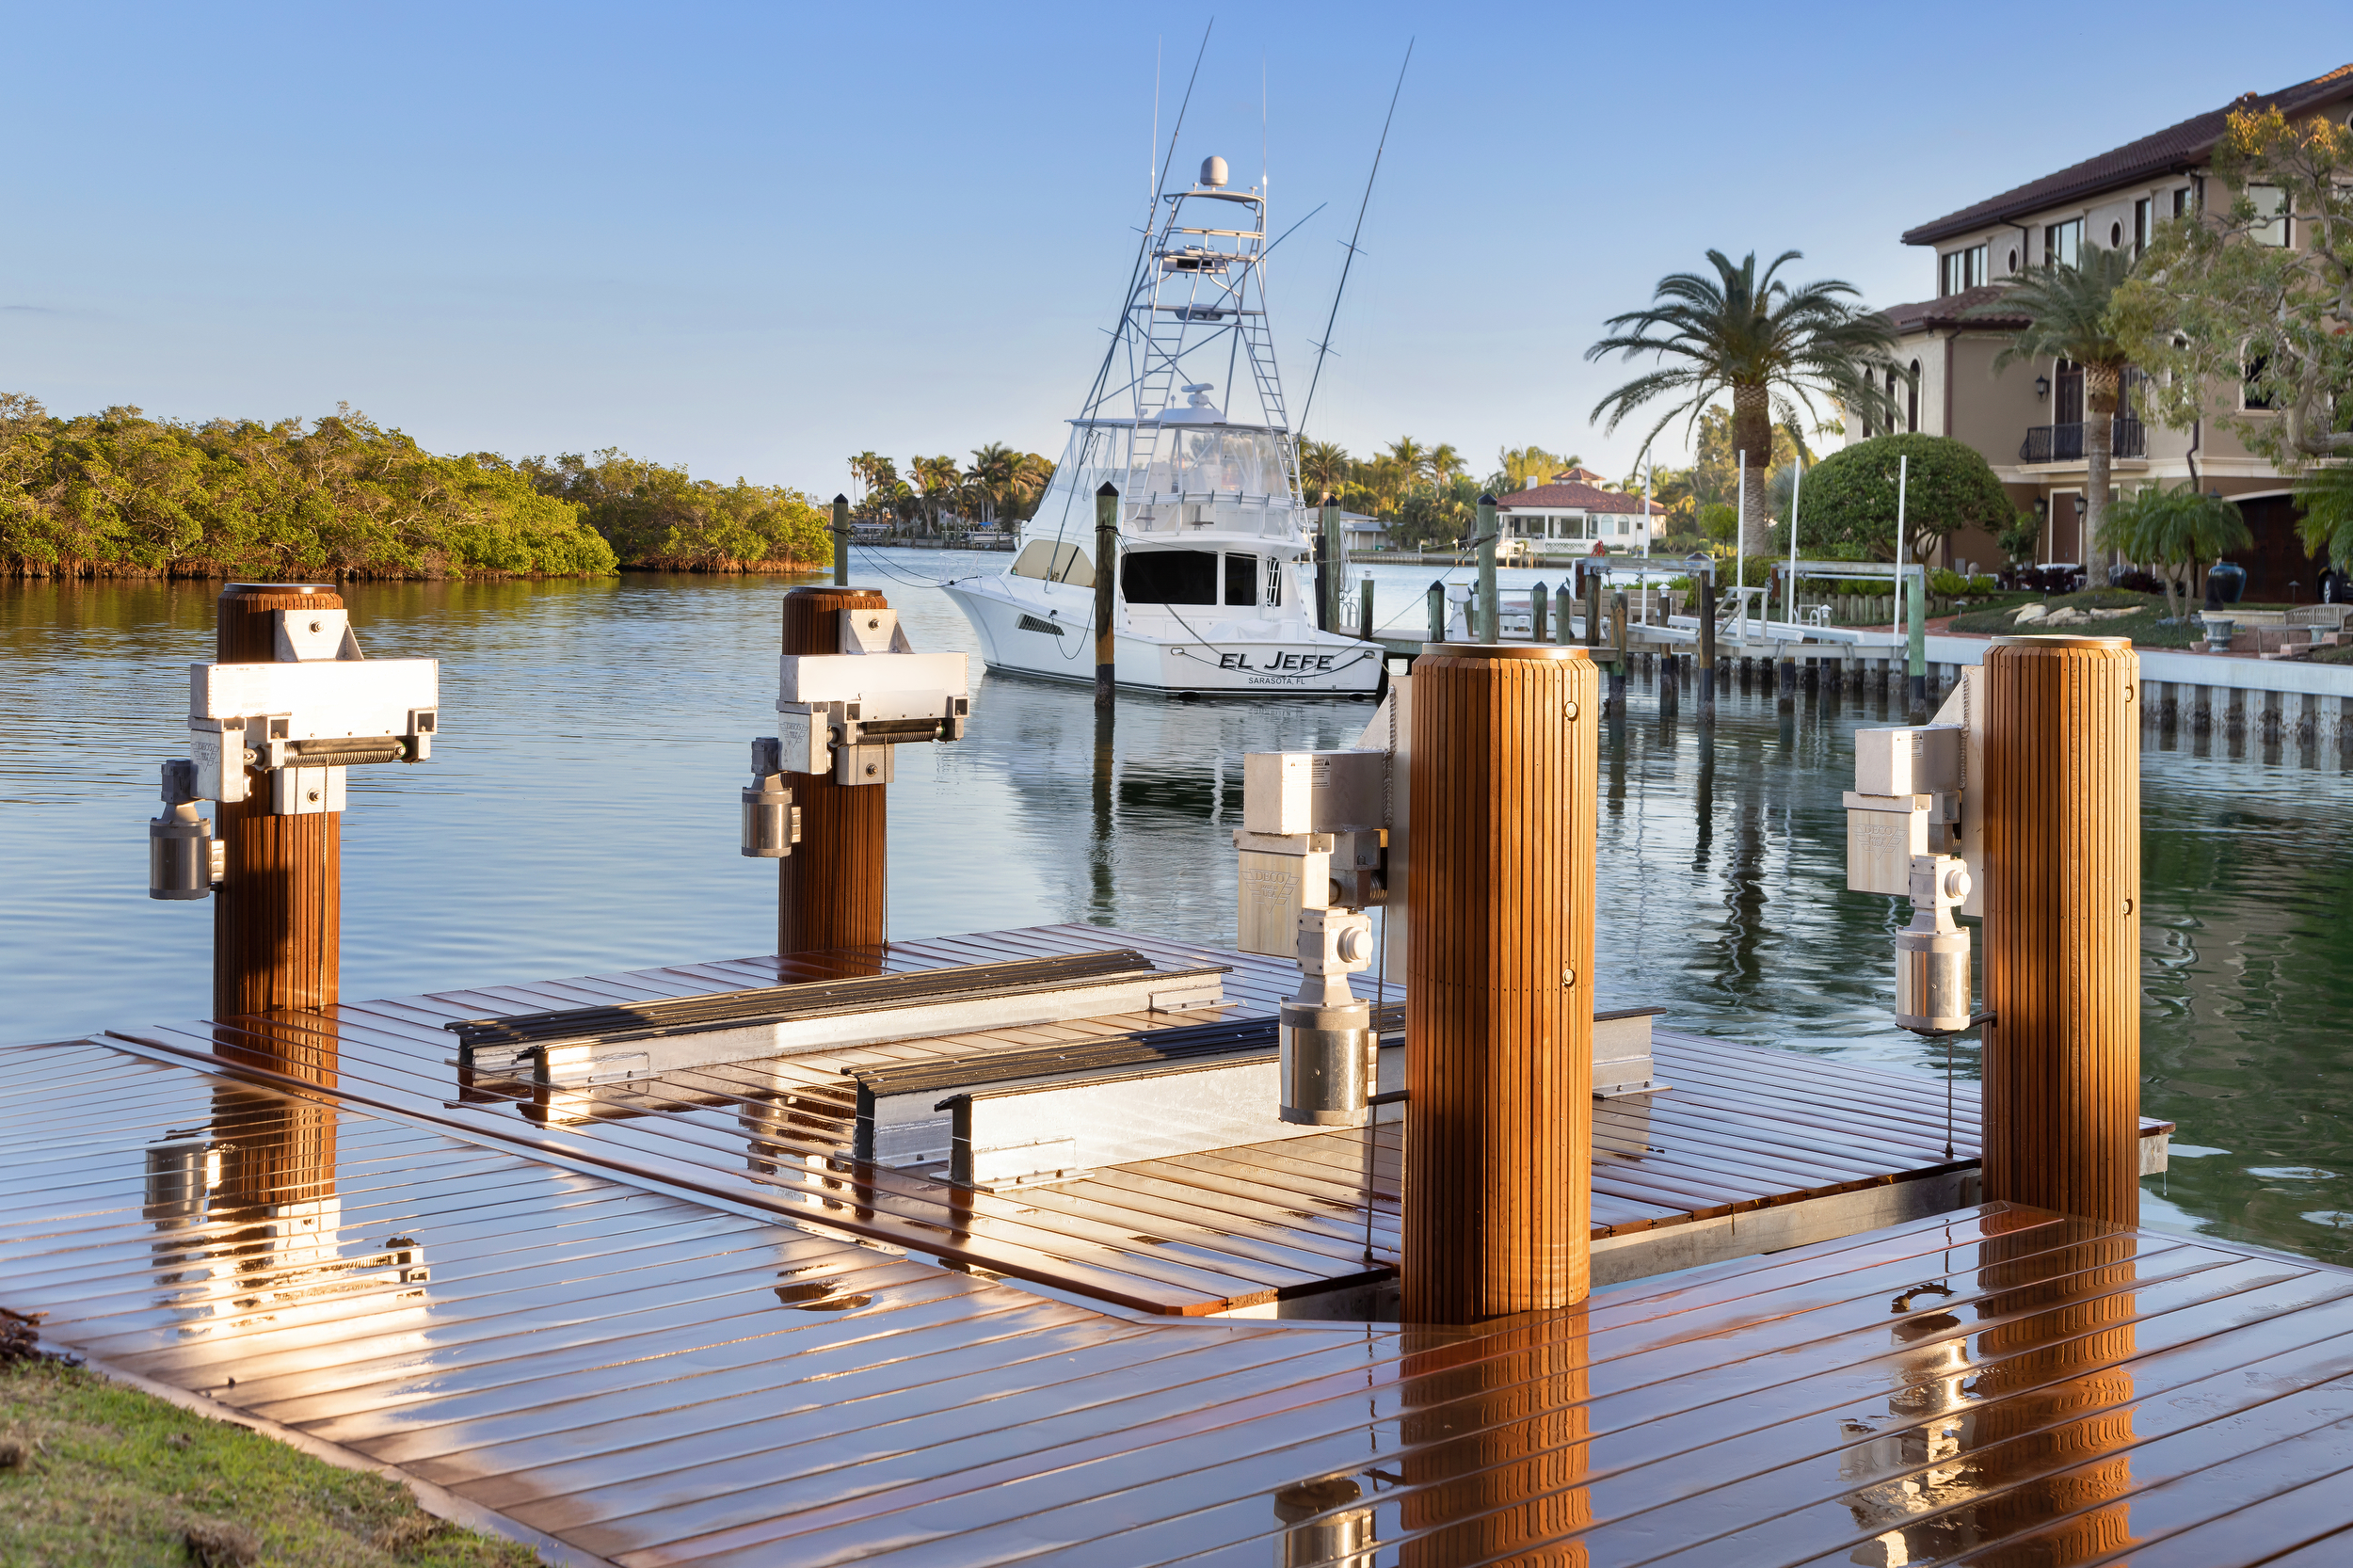 Custom boat lift with Epi wood dock on Lido Key, Sarasota, Florida.